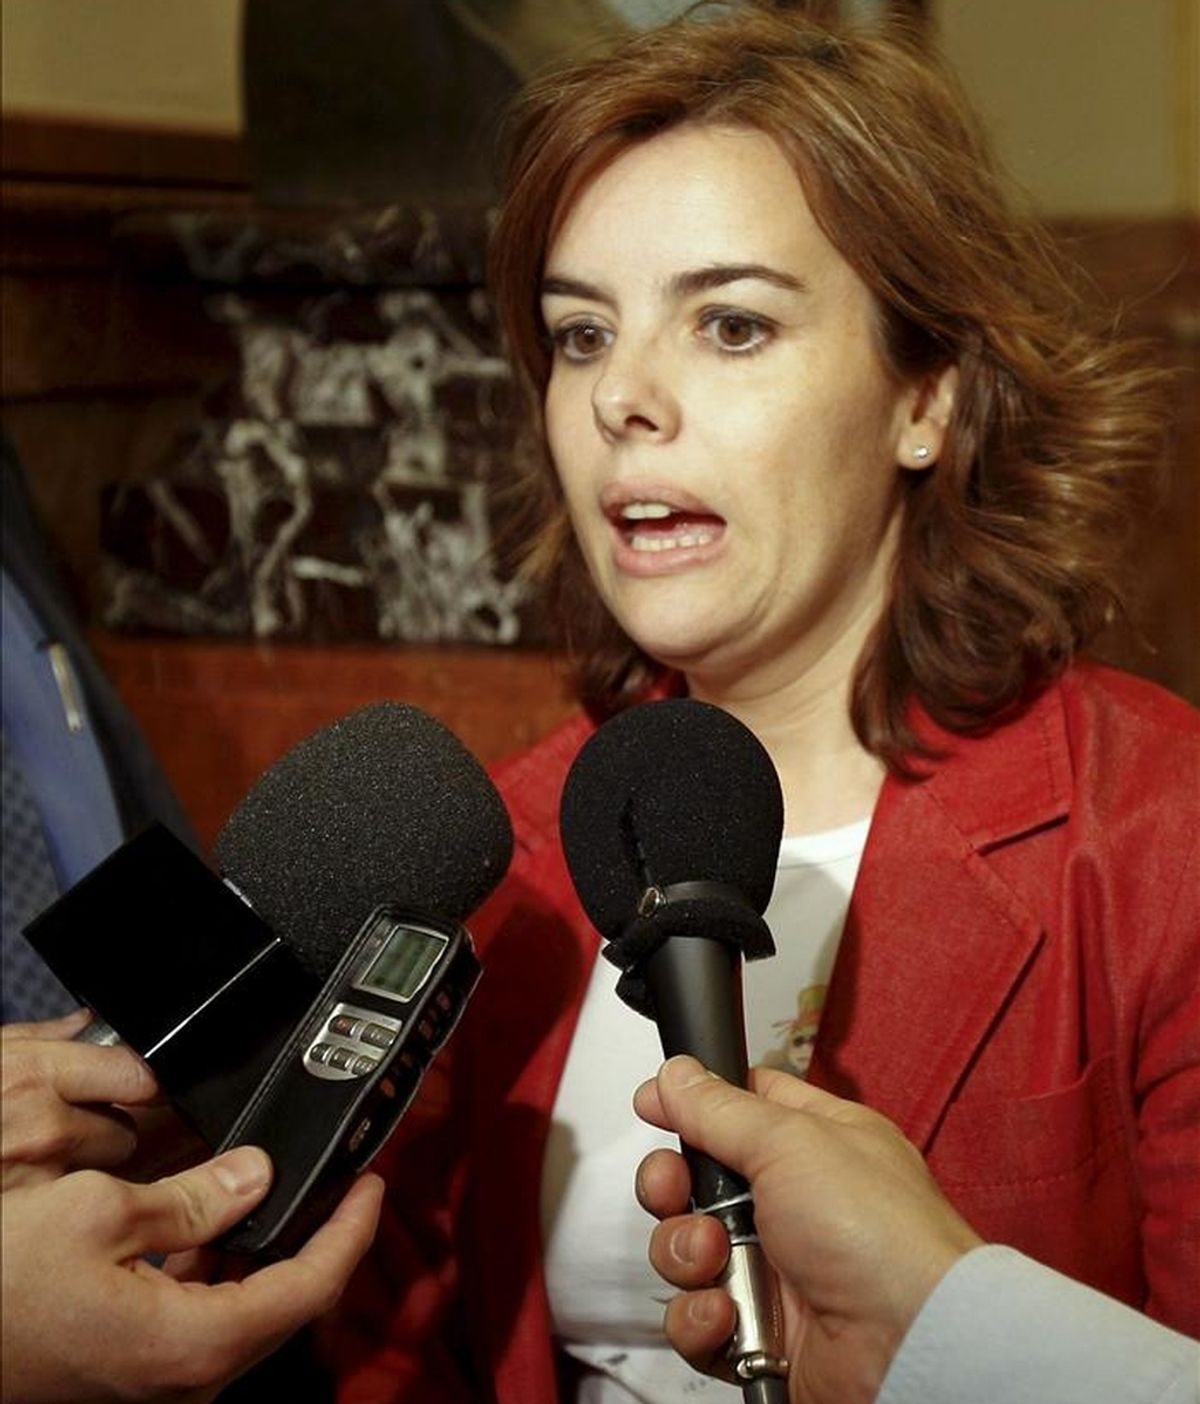 La portavoz parlamentaria del PP, Soraya Sáenz de Santamaría, durante las declaraciones que ha realizado a los medios de comunicación esta tarde en el Congreso de los Diputados. EFE